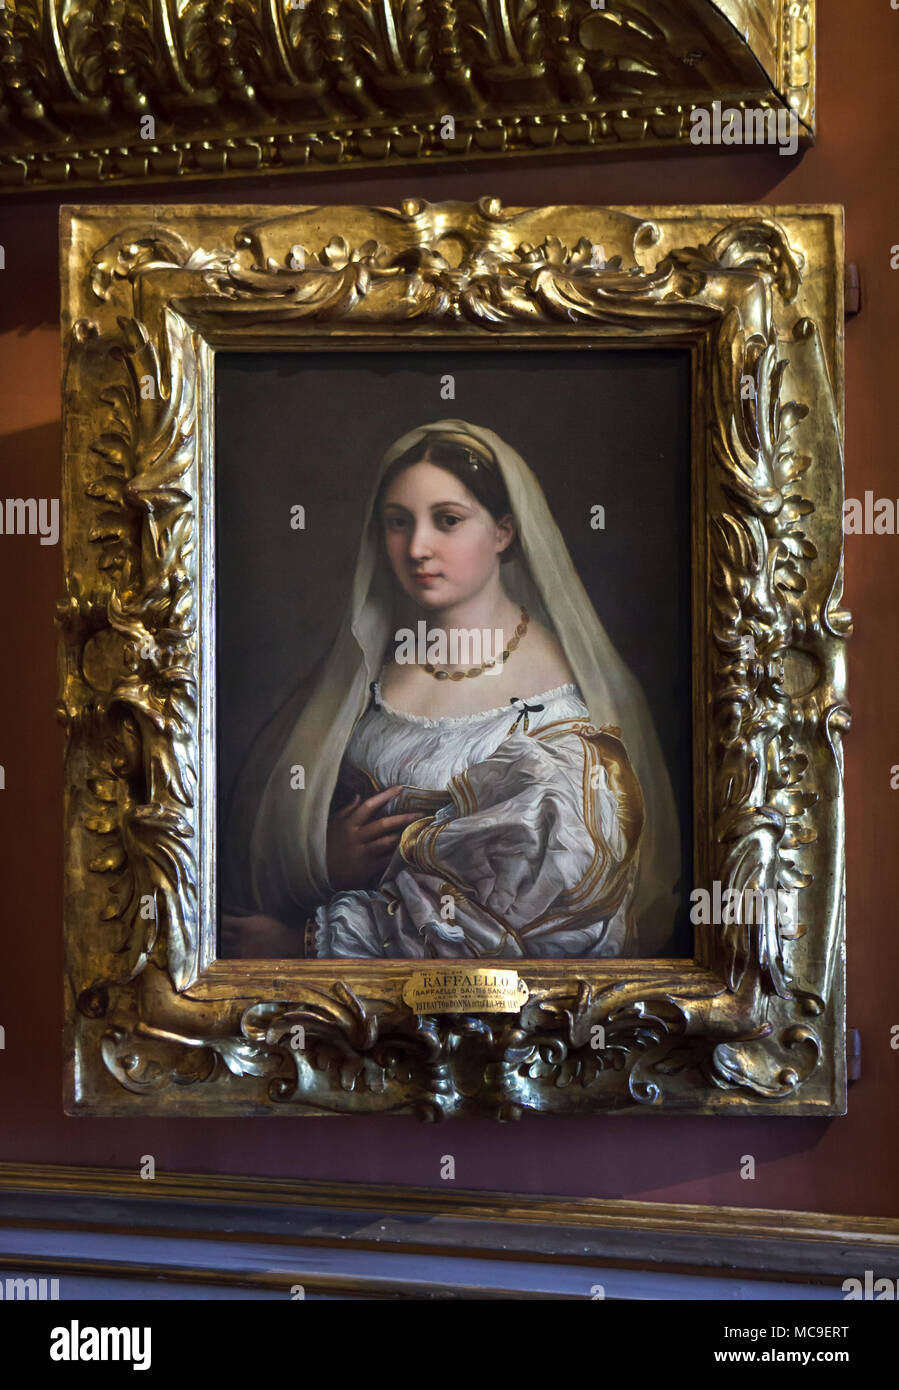 Gemälde "La donna velata" (1514-1515) von der italienischen Renaissance Maler Raphael auf Anzeige in der Galerie Palatina (Galleria Palatina) im Palazzo Pitti in Florenz, Toskana, Italien. Stockfoto